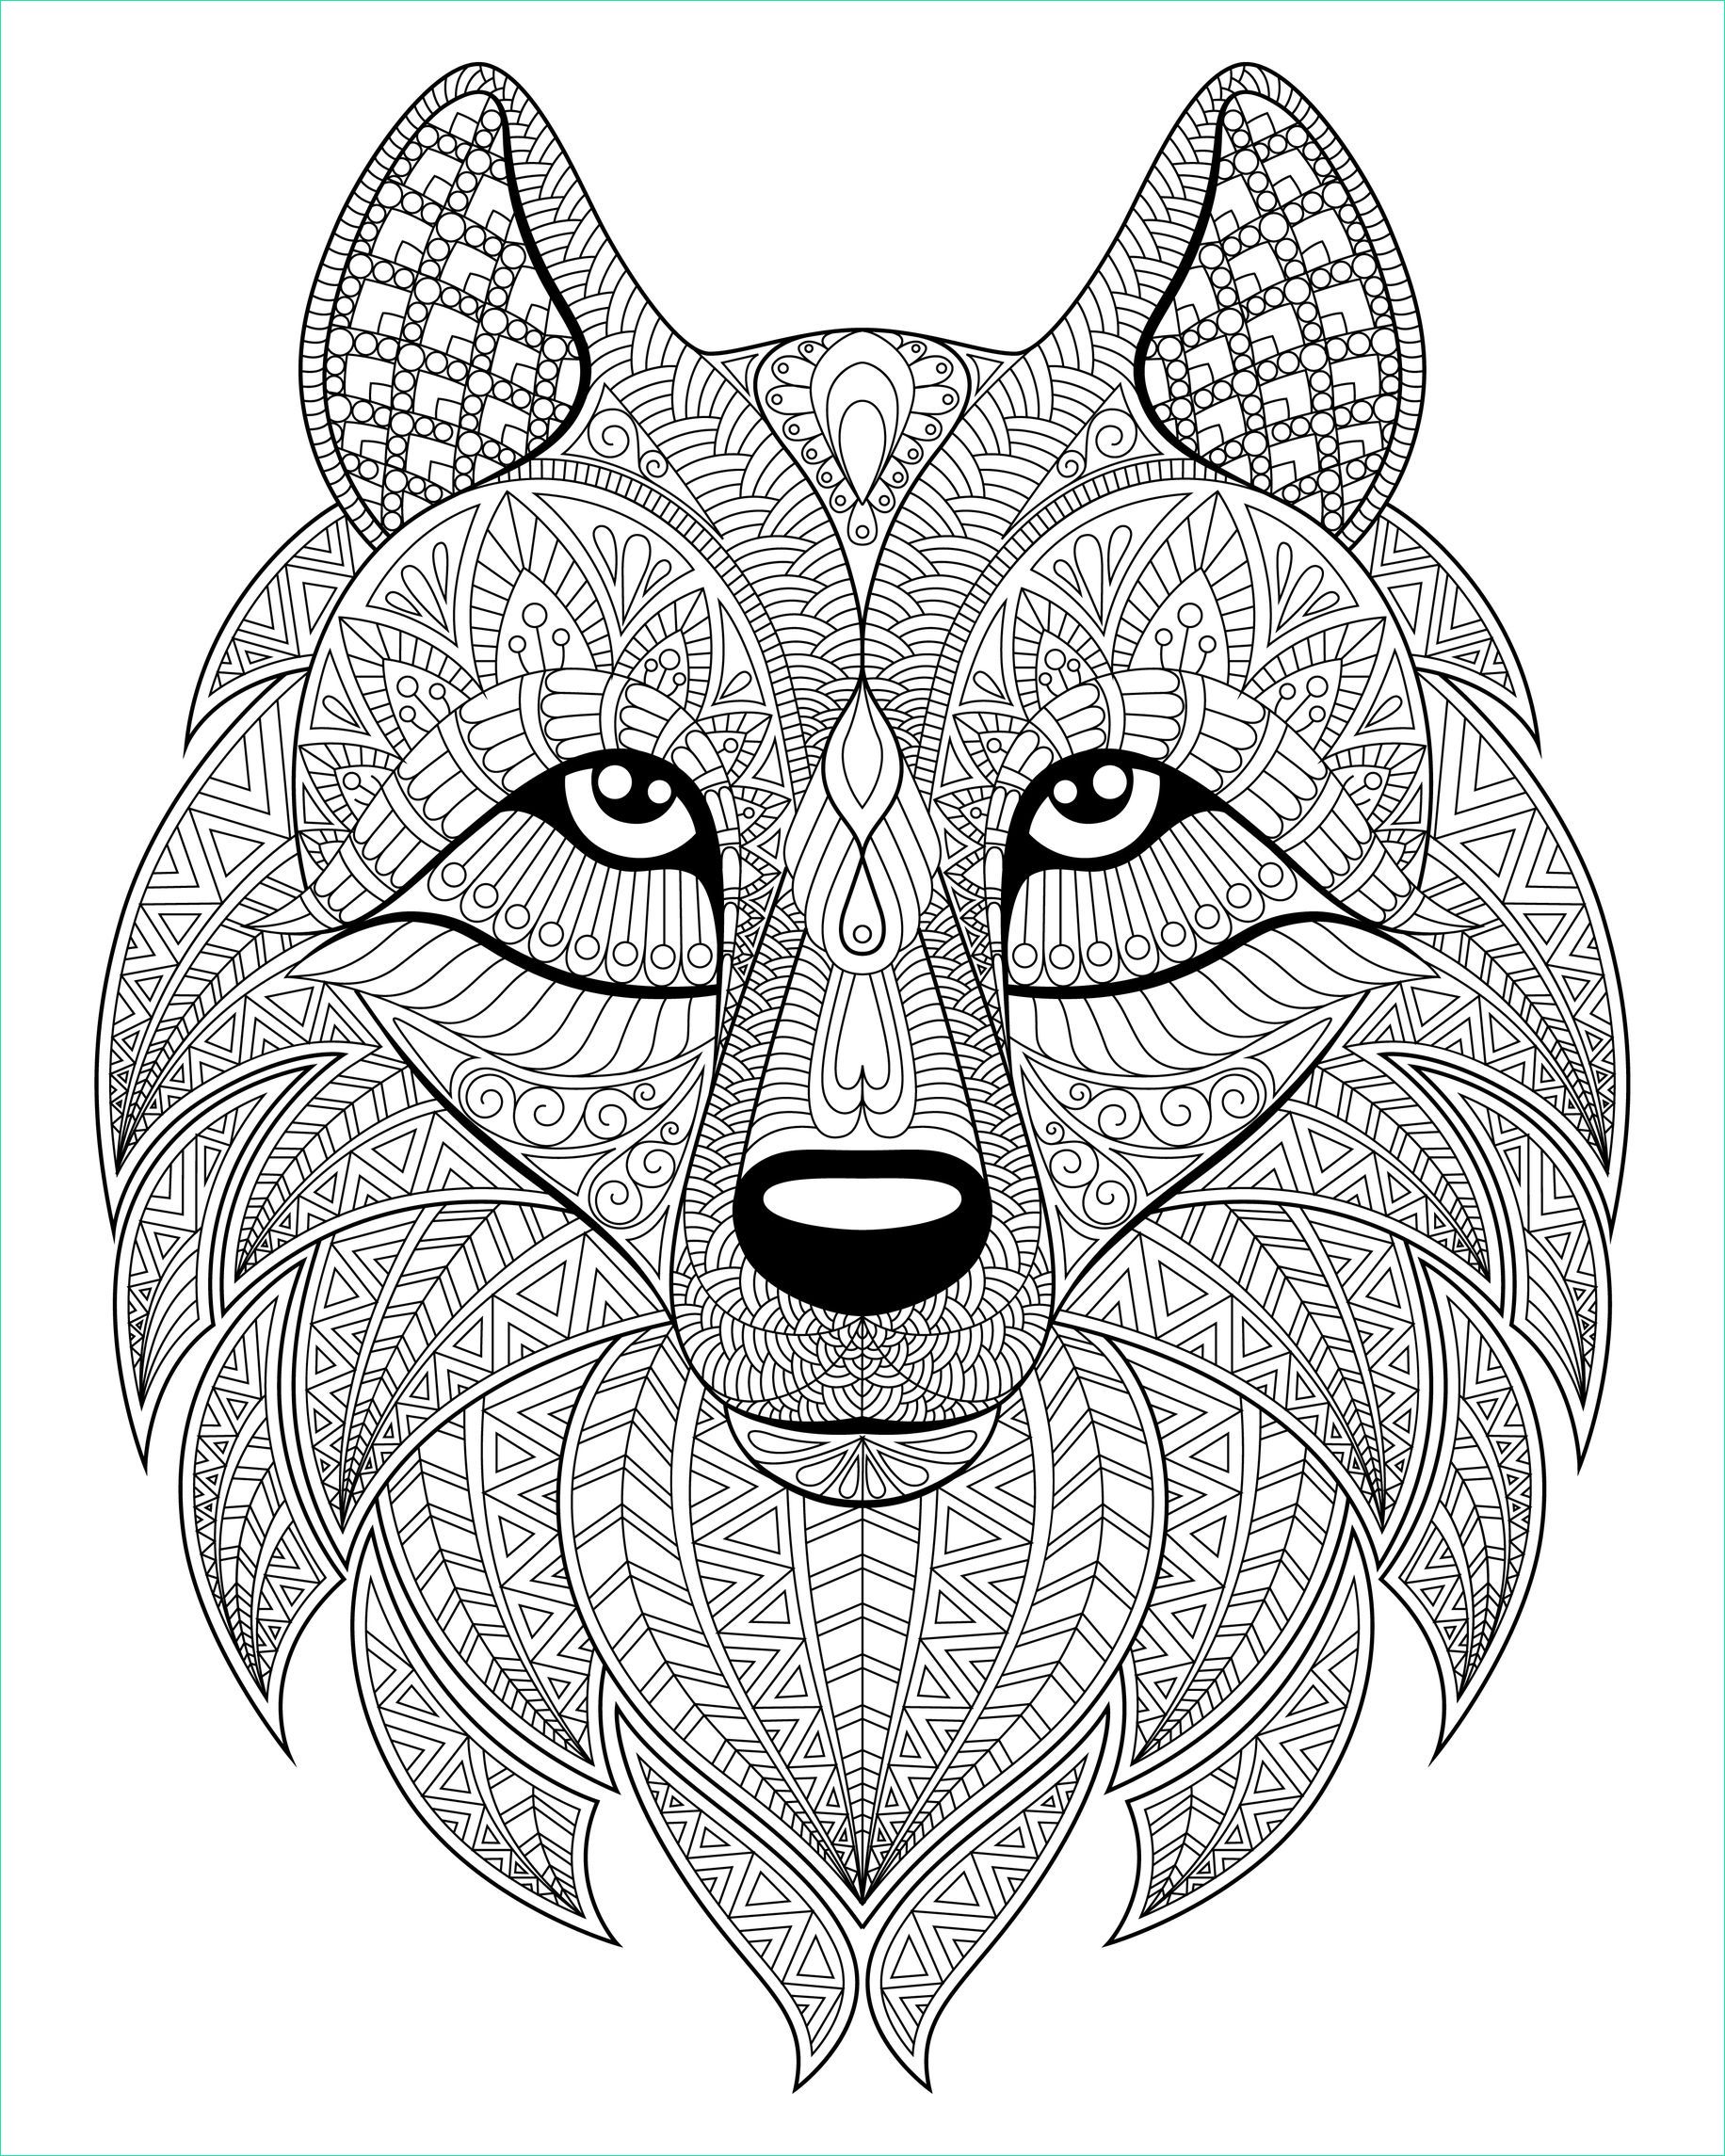 image=loups coloriage tete de loup et motifs plexes 1